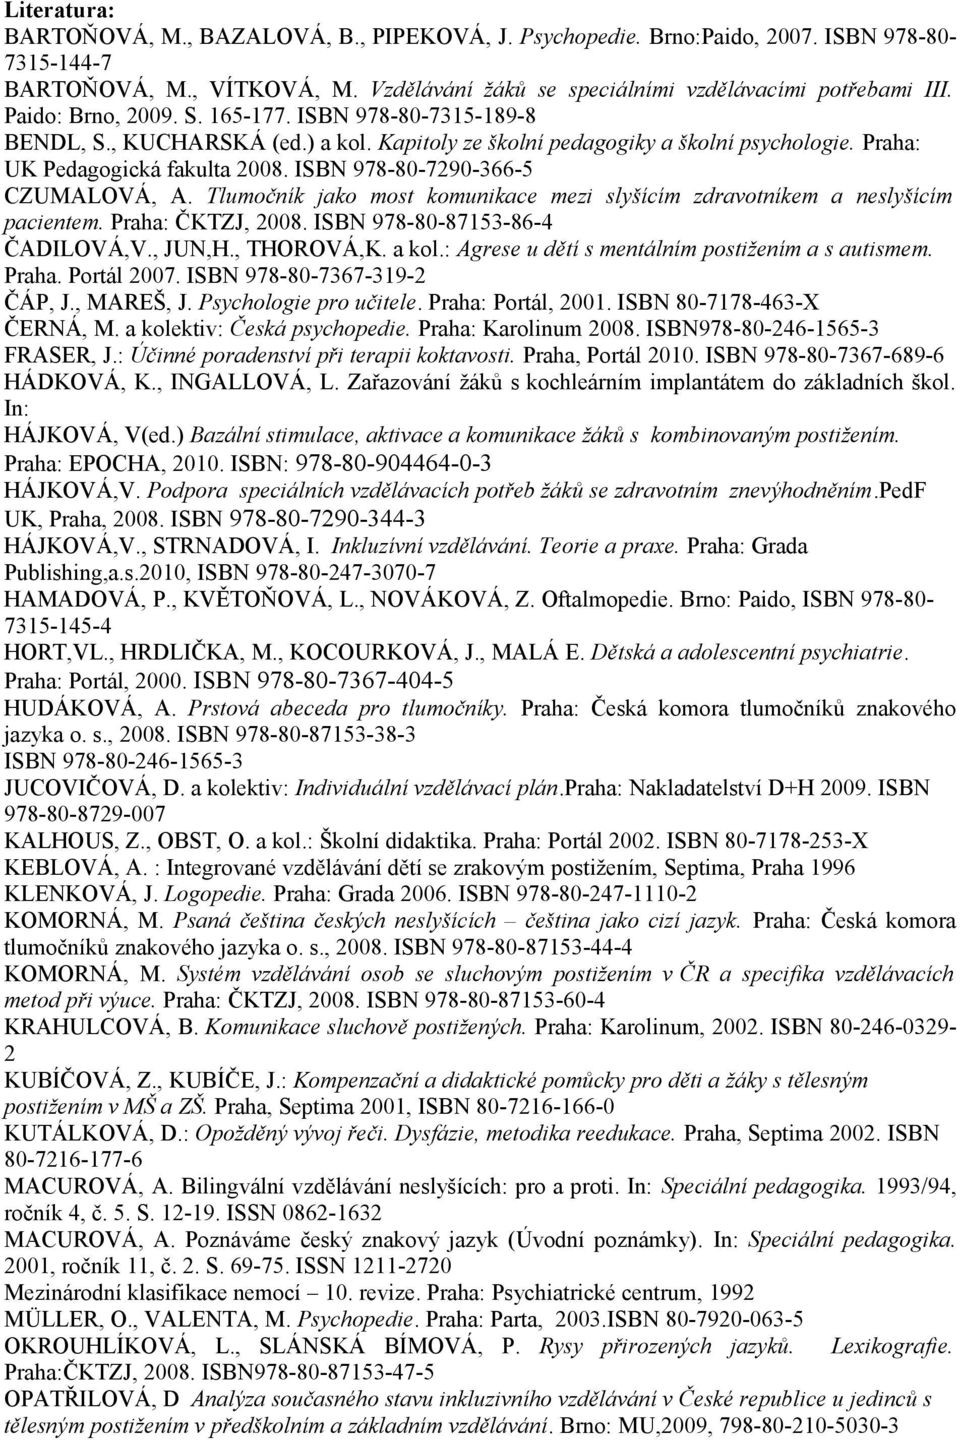 ISBN 978-80-7290-366-5 CZUMALOVÁ, A. Tlumočník jako most komunikace mezi slyšícím zdravotníkem a neslyšícím pacientem. Praha: ČKTZJ, 2008. ISBN 978-80-87153-86-4 ČADILOVÁ,V., JUN,H., THOROVÁ,K. a kol.